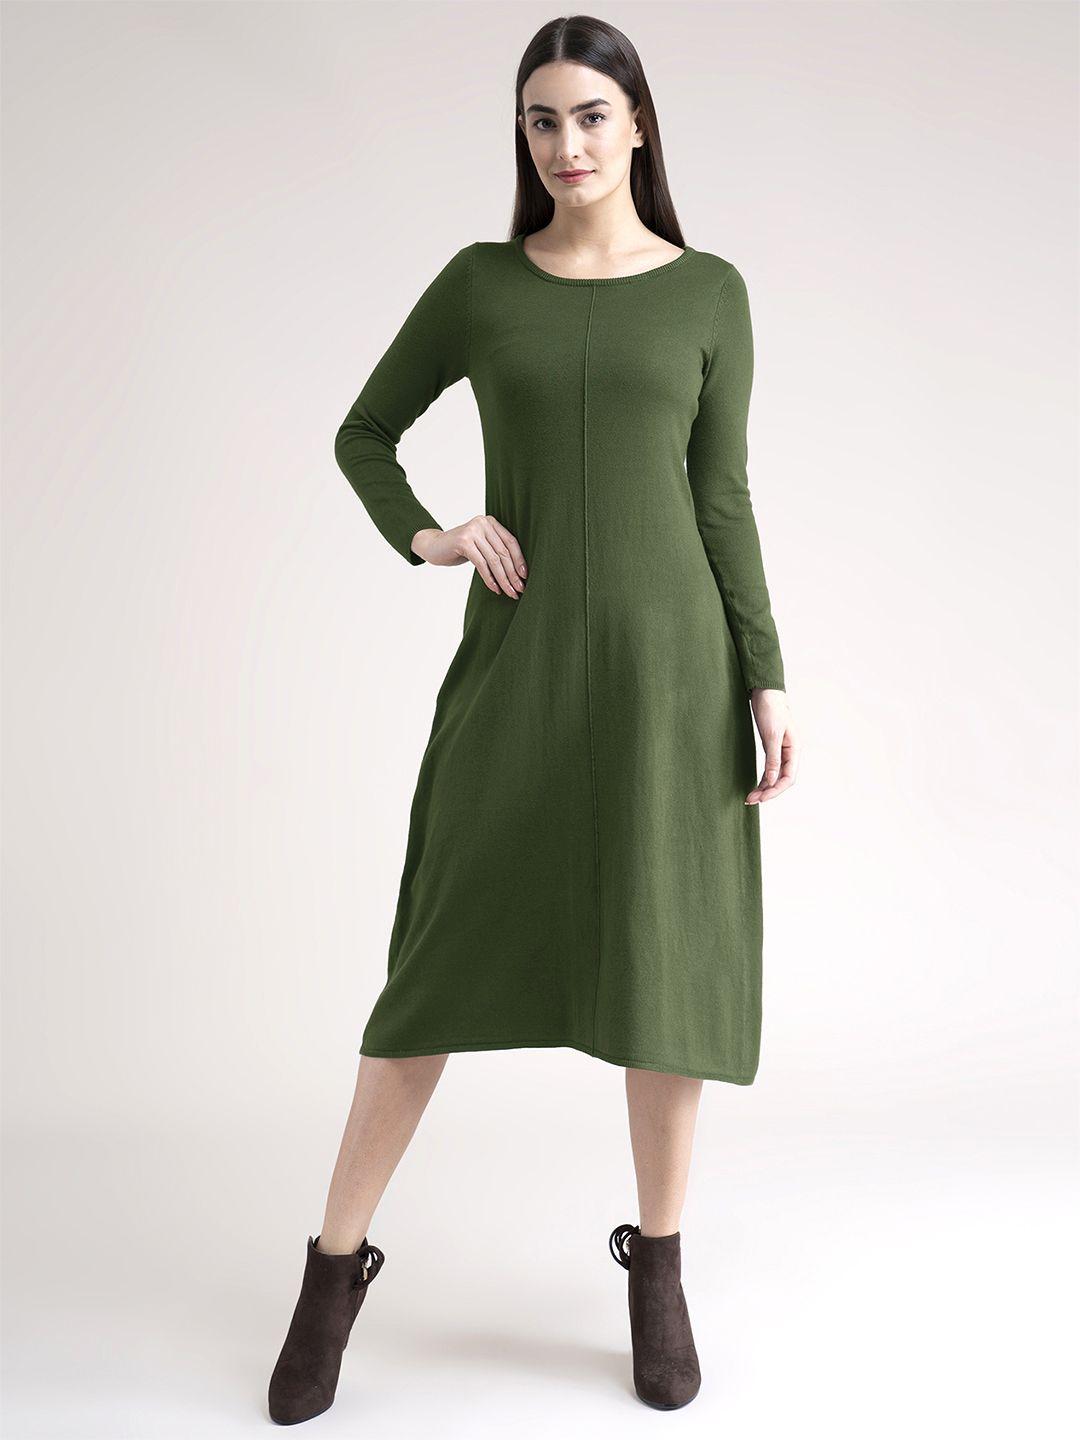 fablestreet olive green knit midi sweater dress